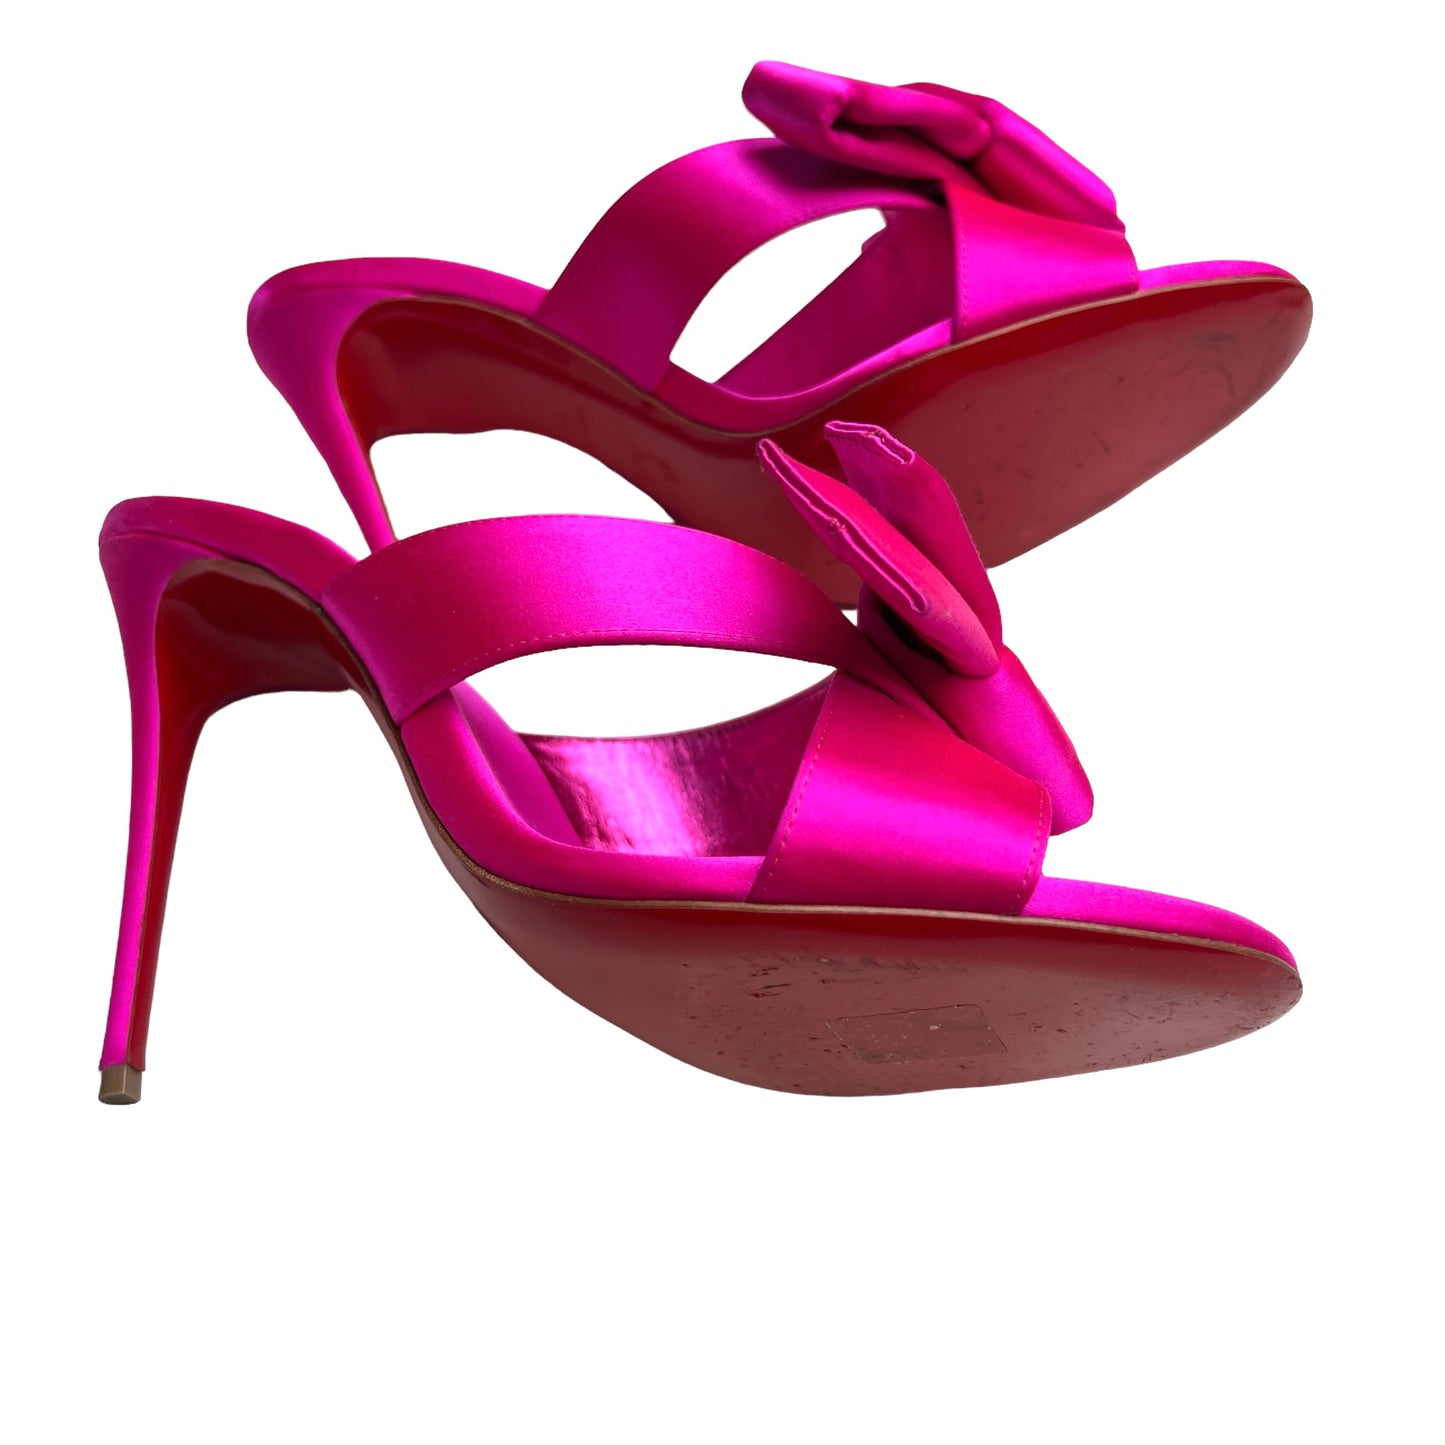 Pink Satin Heels - 10